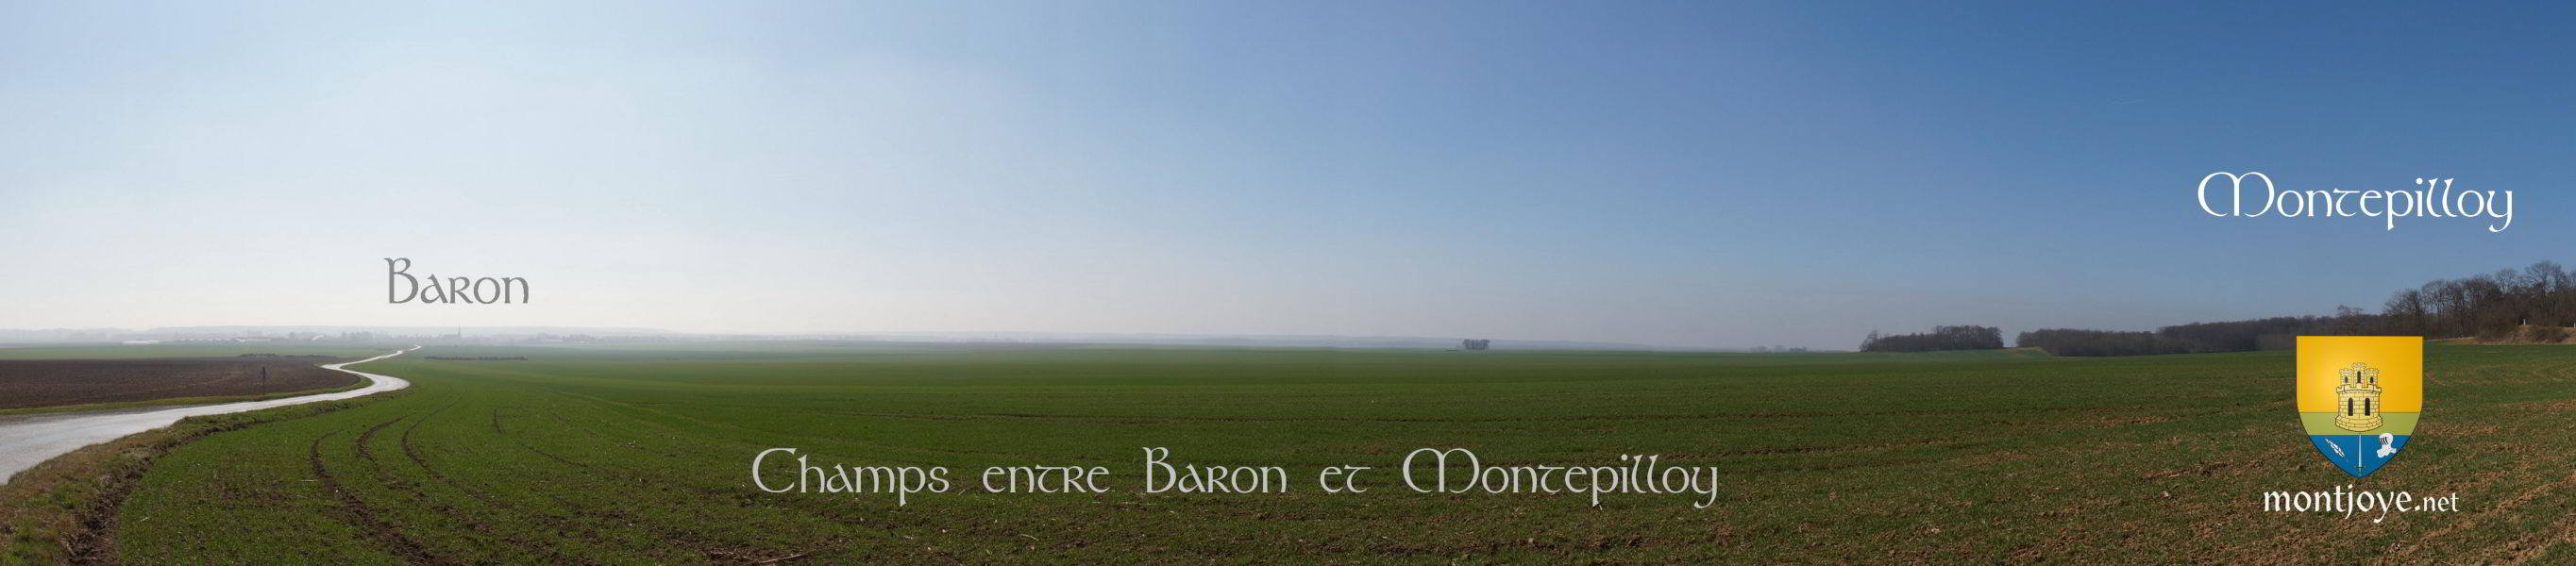 Baron - Montepilloy